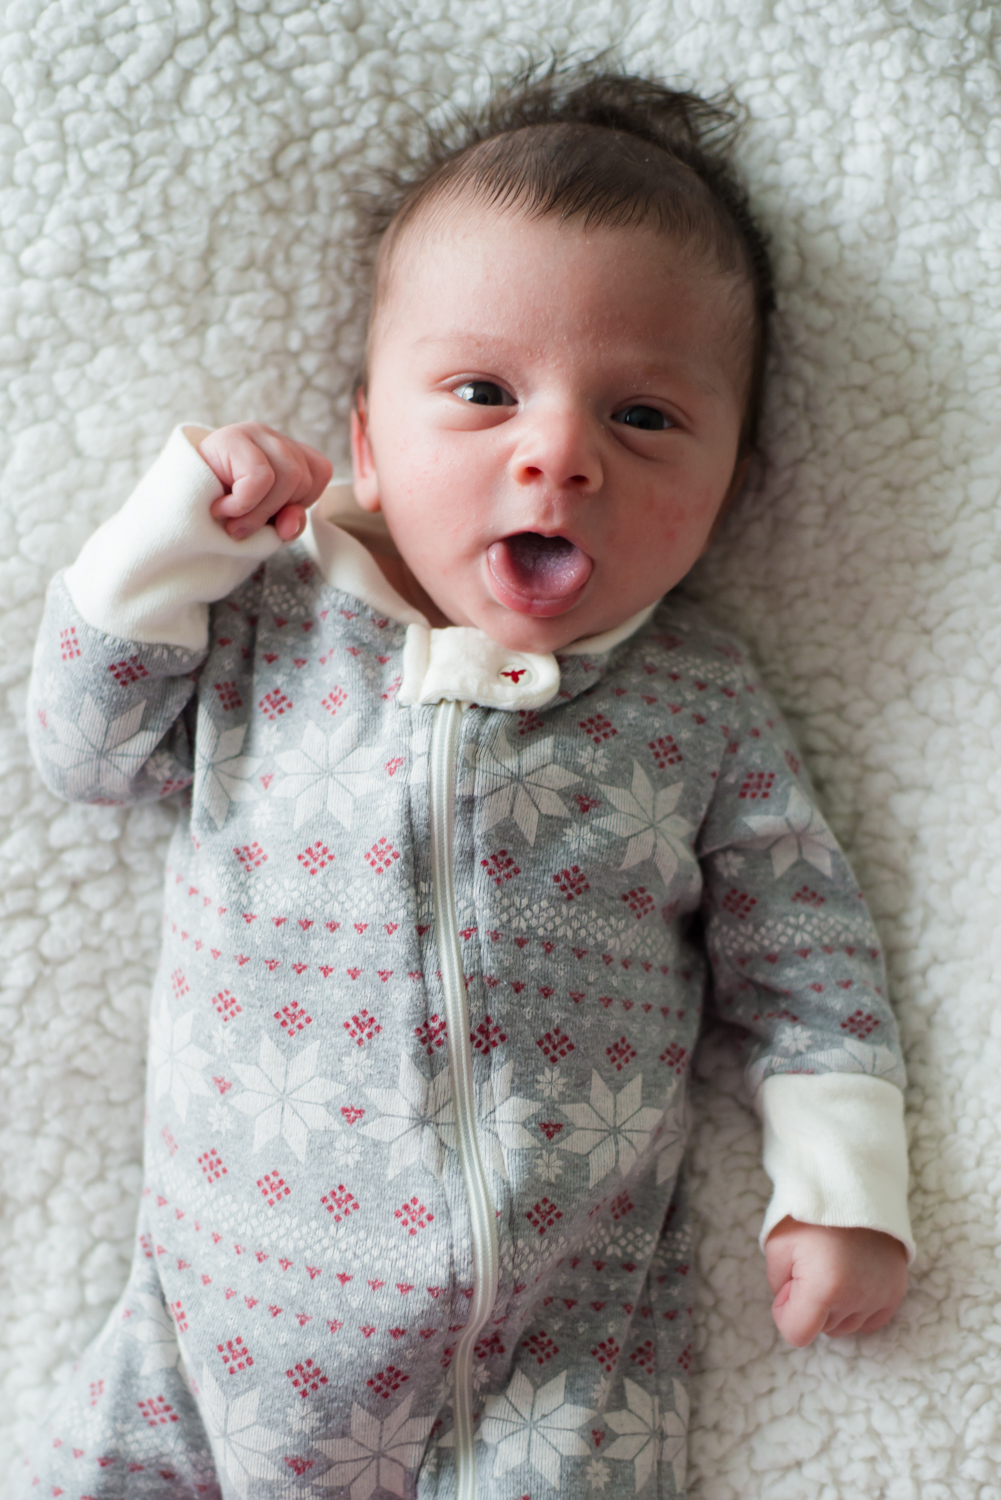 Jack Everett is 1 Month Old – Newborn Update